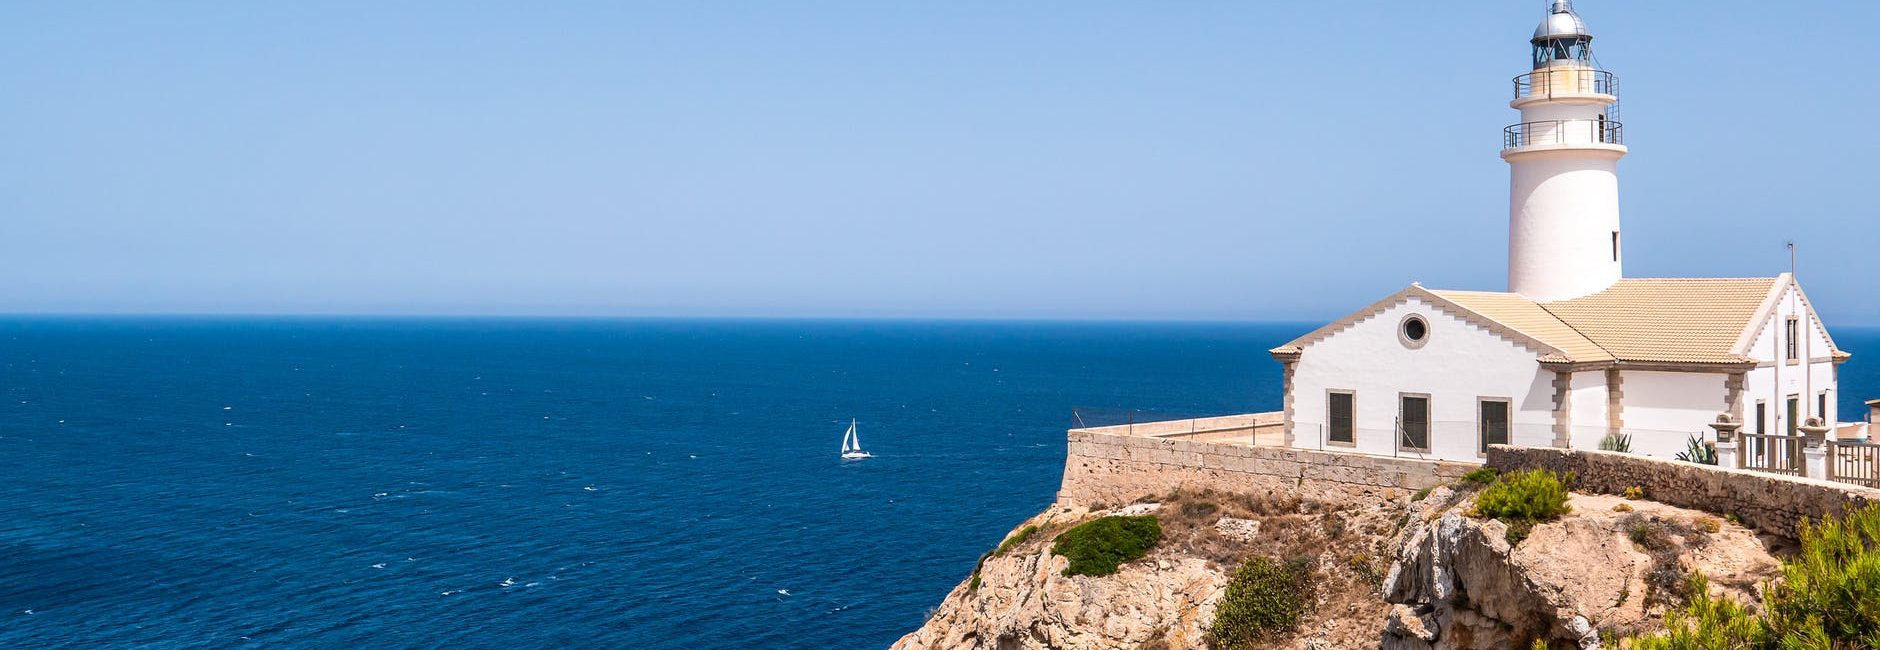 Platja Port des Canonge na Majorce – co zobaczyć na zachodzie Majorki?